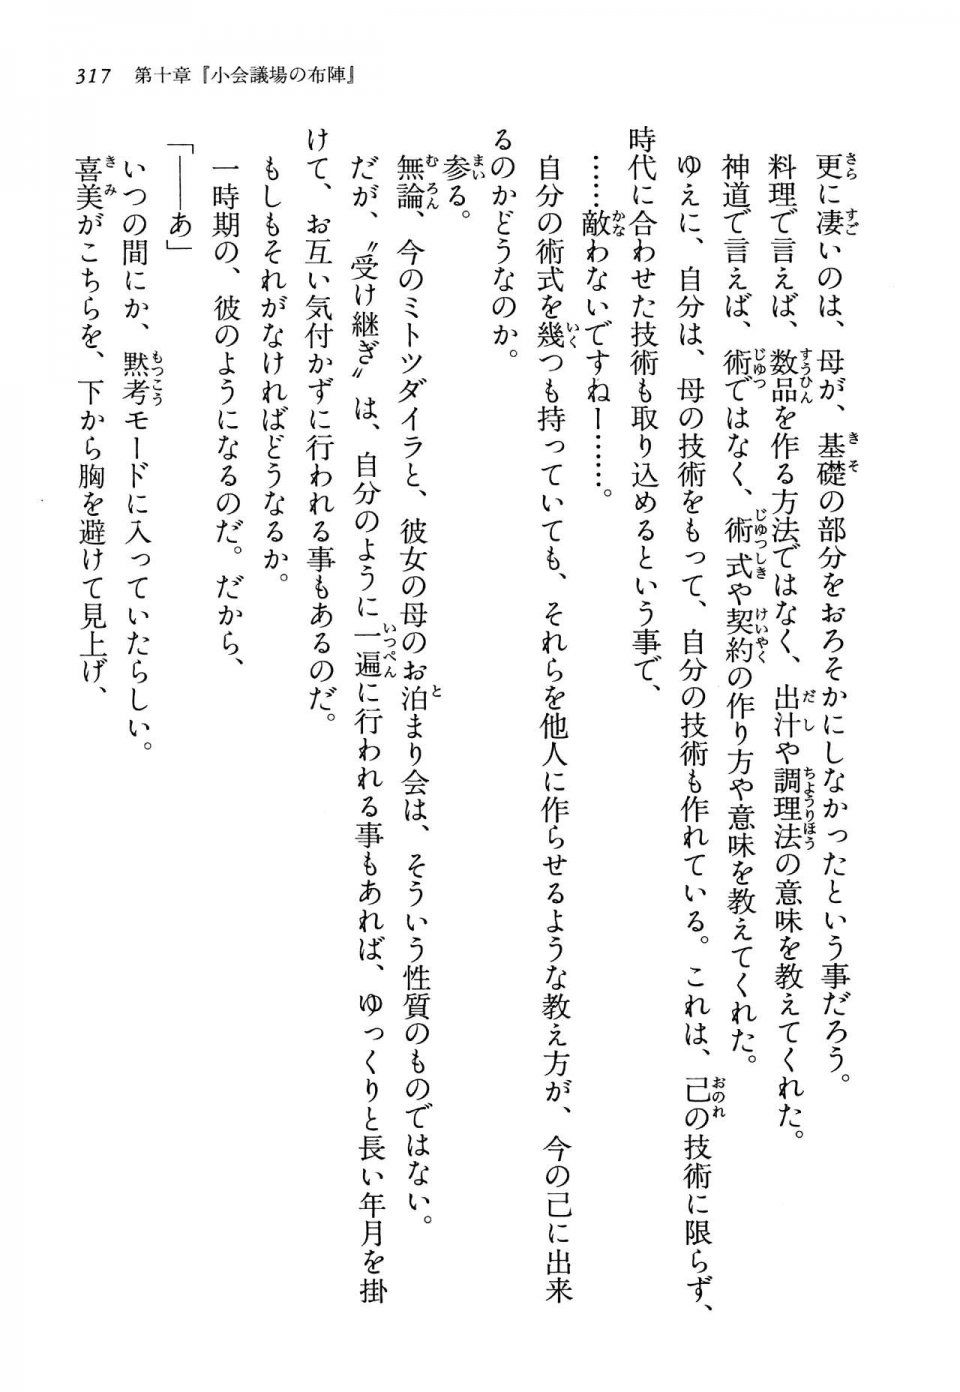 Kyoukai Senjou no Horizon LN Vol 13(6A) - Photo #317